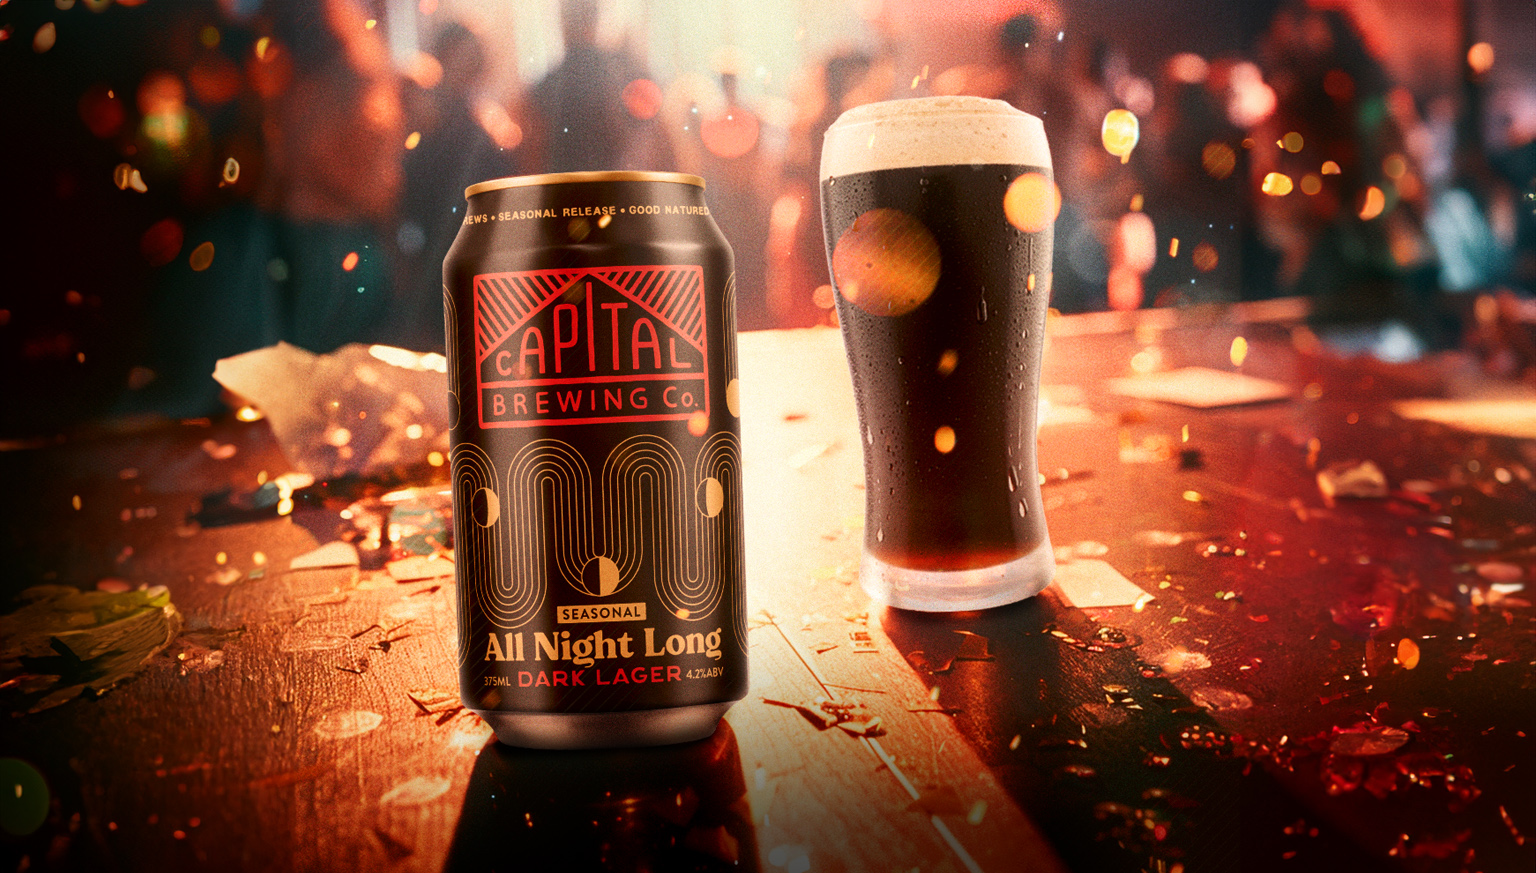 All Night Long Dark Lager seasonal release beer